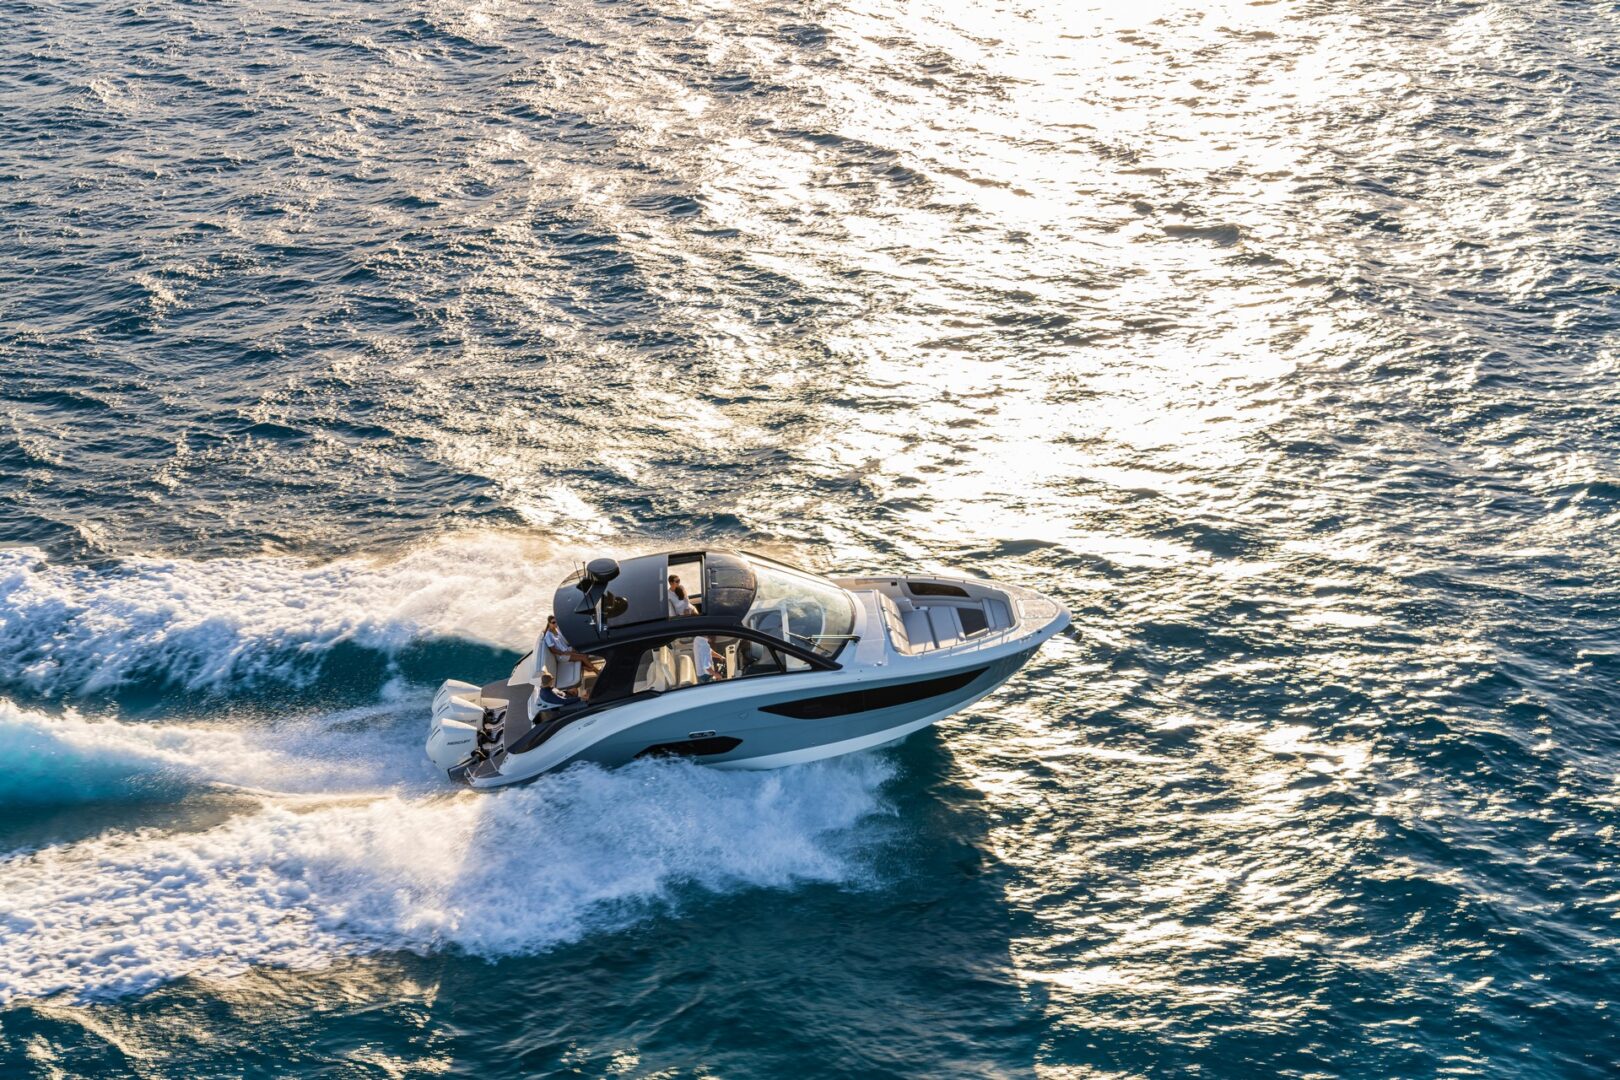 بي ام دبليو تكشف عن قارب "سان دانسر 370 أوتبورد" 2021 الفاخر 67